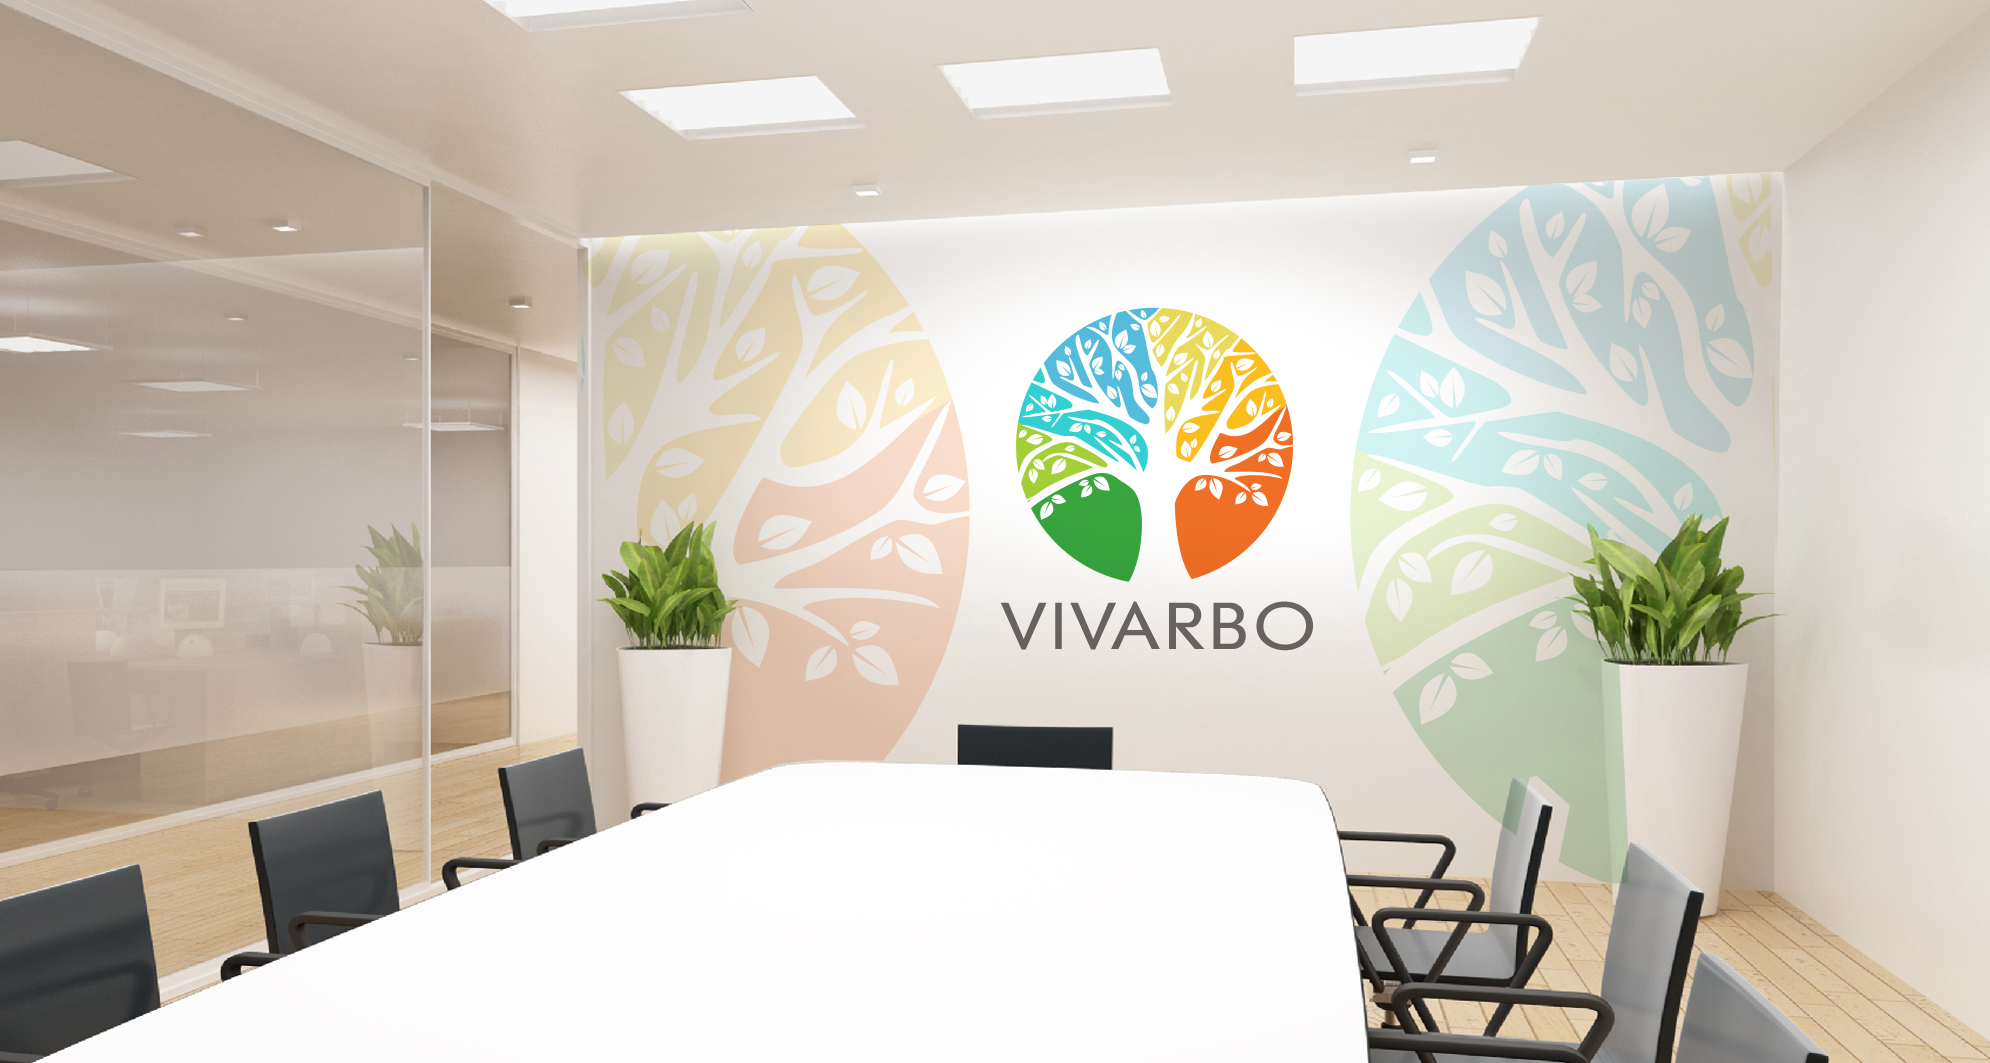 Vivarbo - Deine Welt positiv verändern, einen Schritt nach dem anderen.